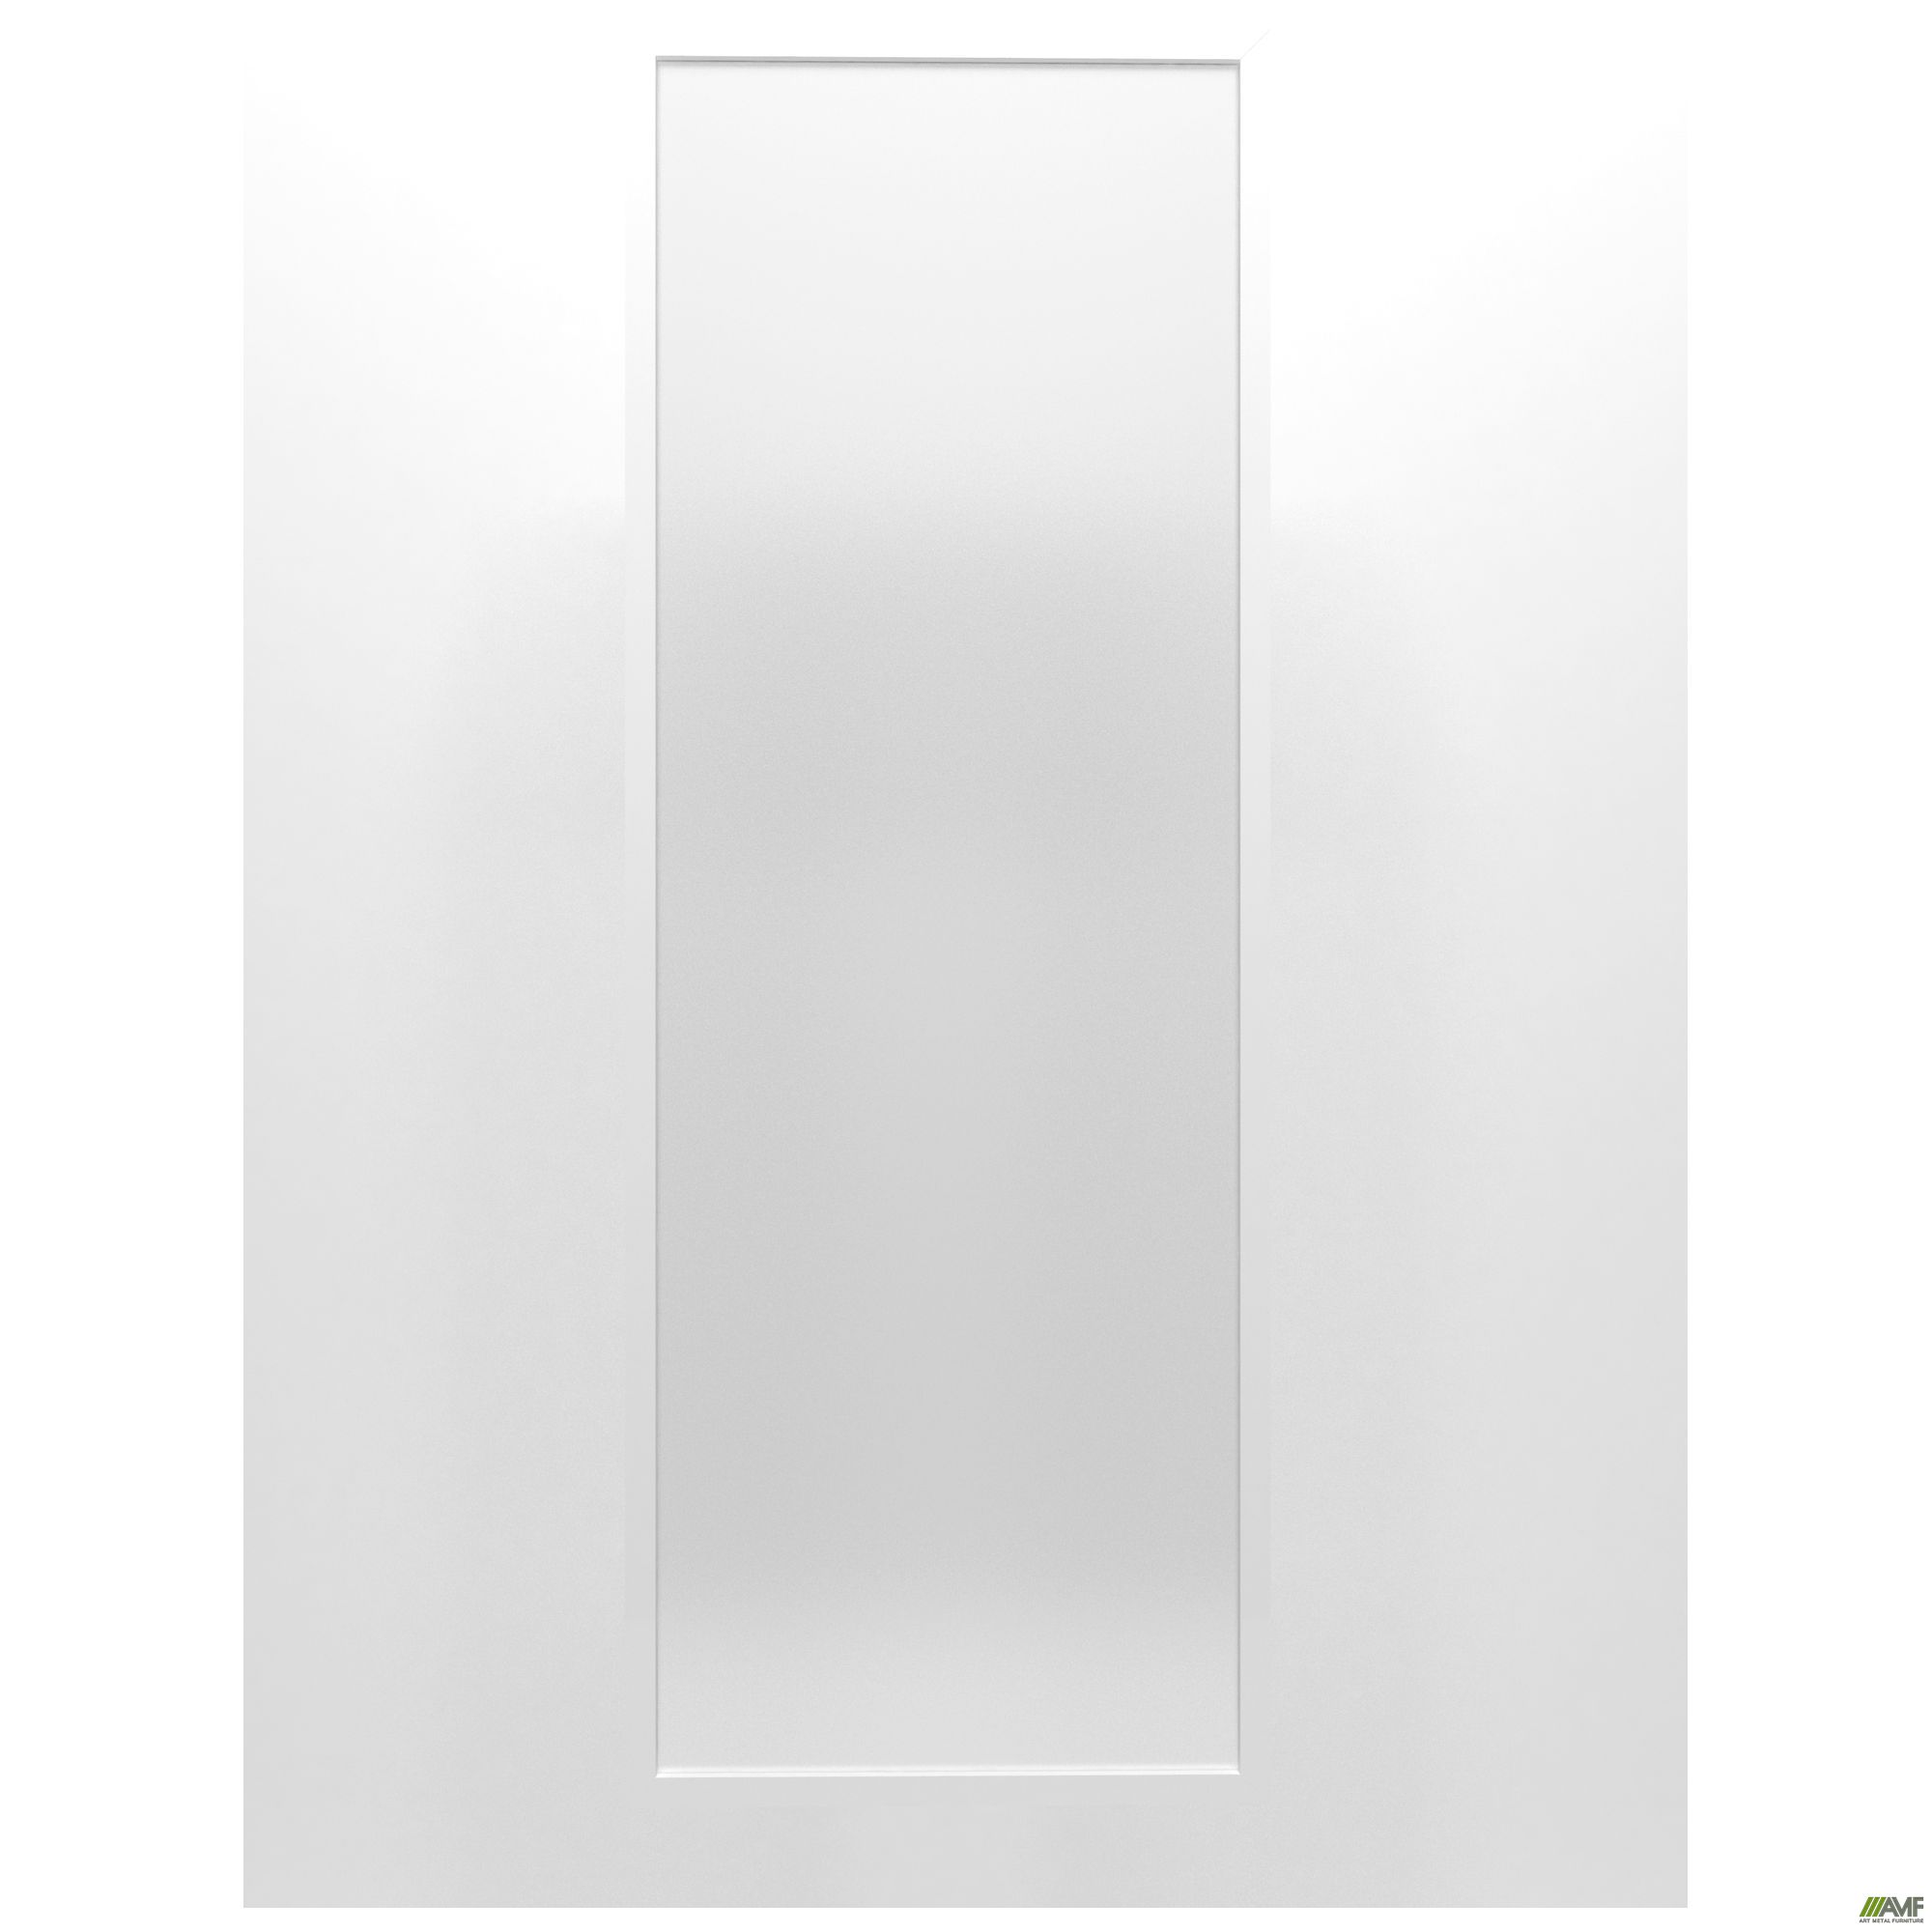 Фото 2 - Фасад стекло Delta DL-711R (426х1177х20мм) профиль белый 